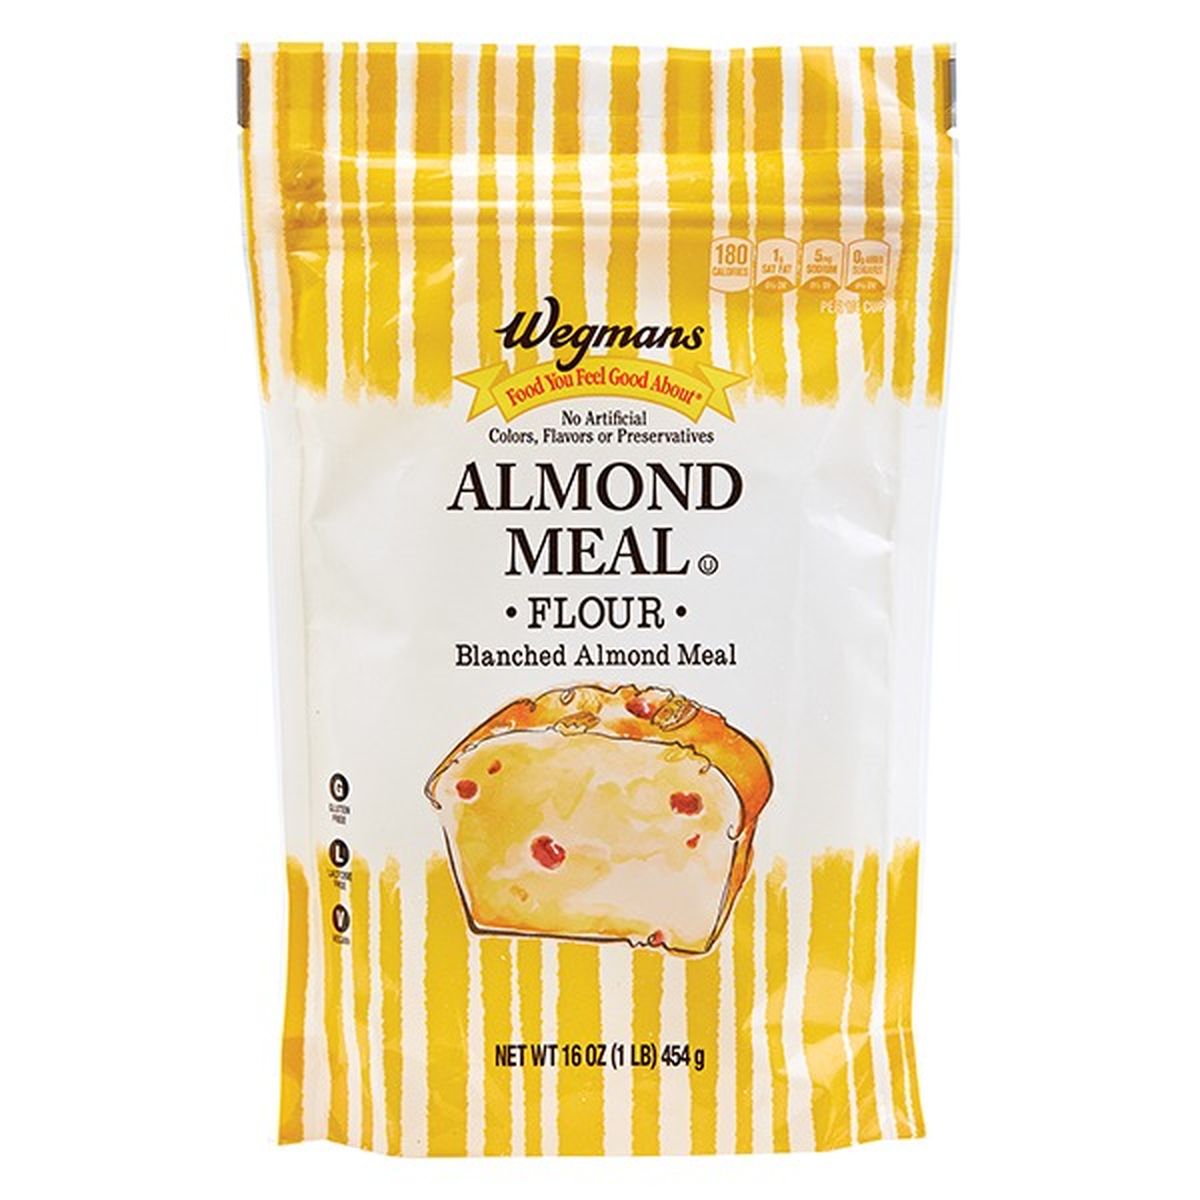 Calories in Wegmans Flour, Almond Meal